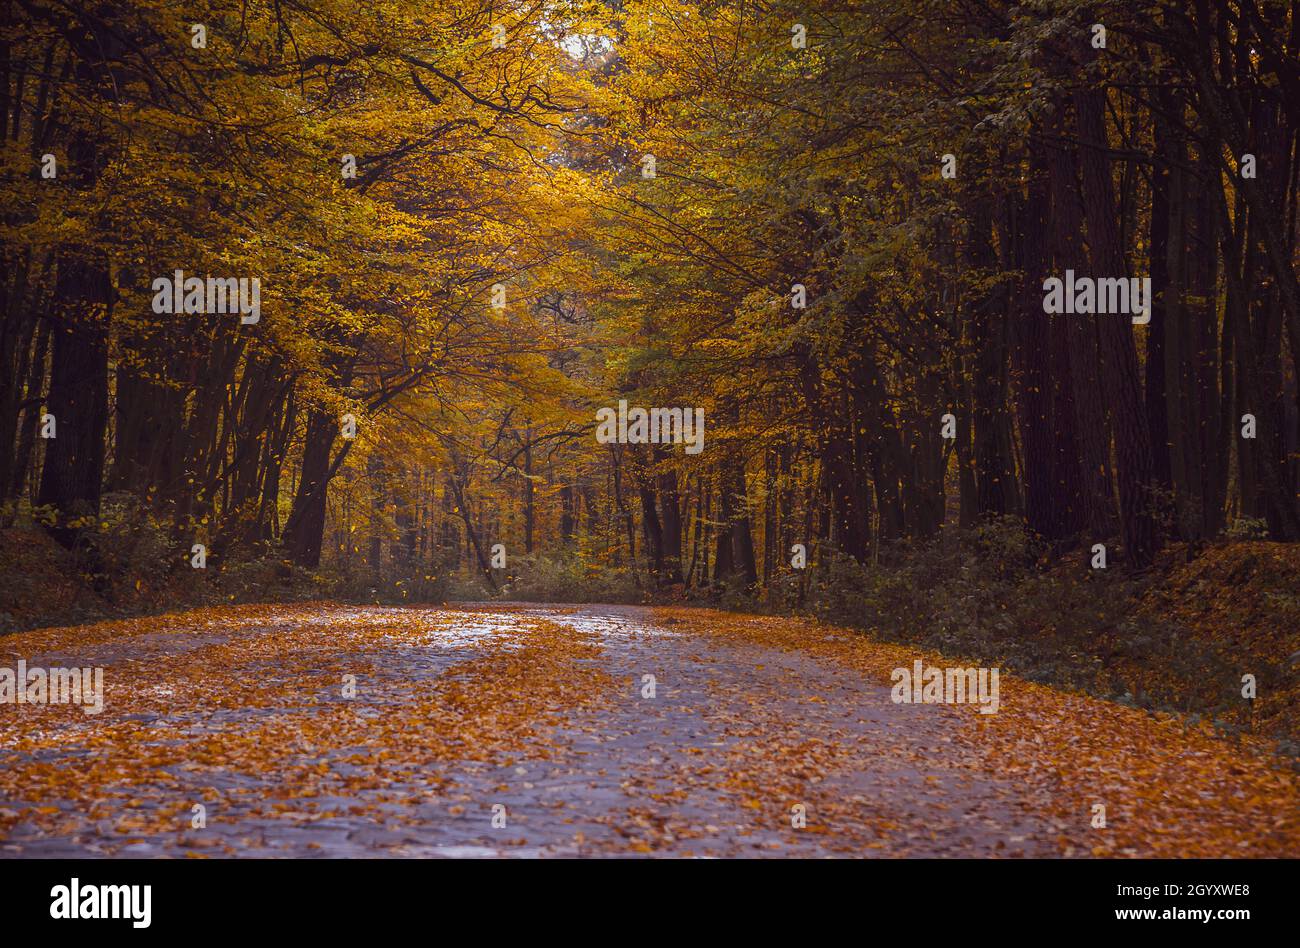 Automne forêt à feuilles caduques. Route dans la forêt d'automne. Chute de feuilles jaunes d'arbres. Saisons Banque D'Images